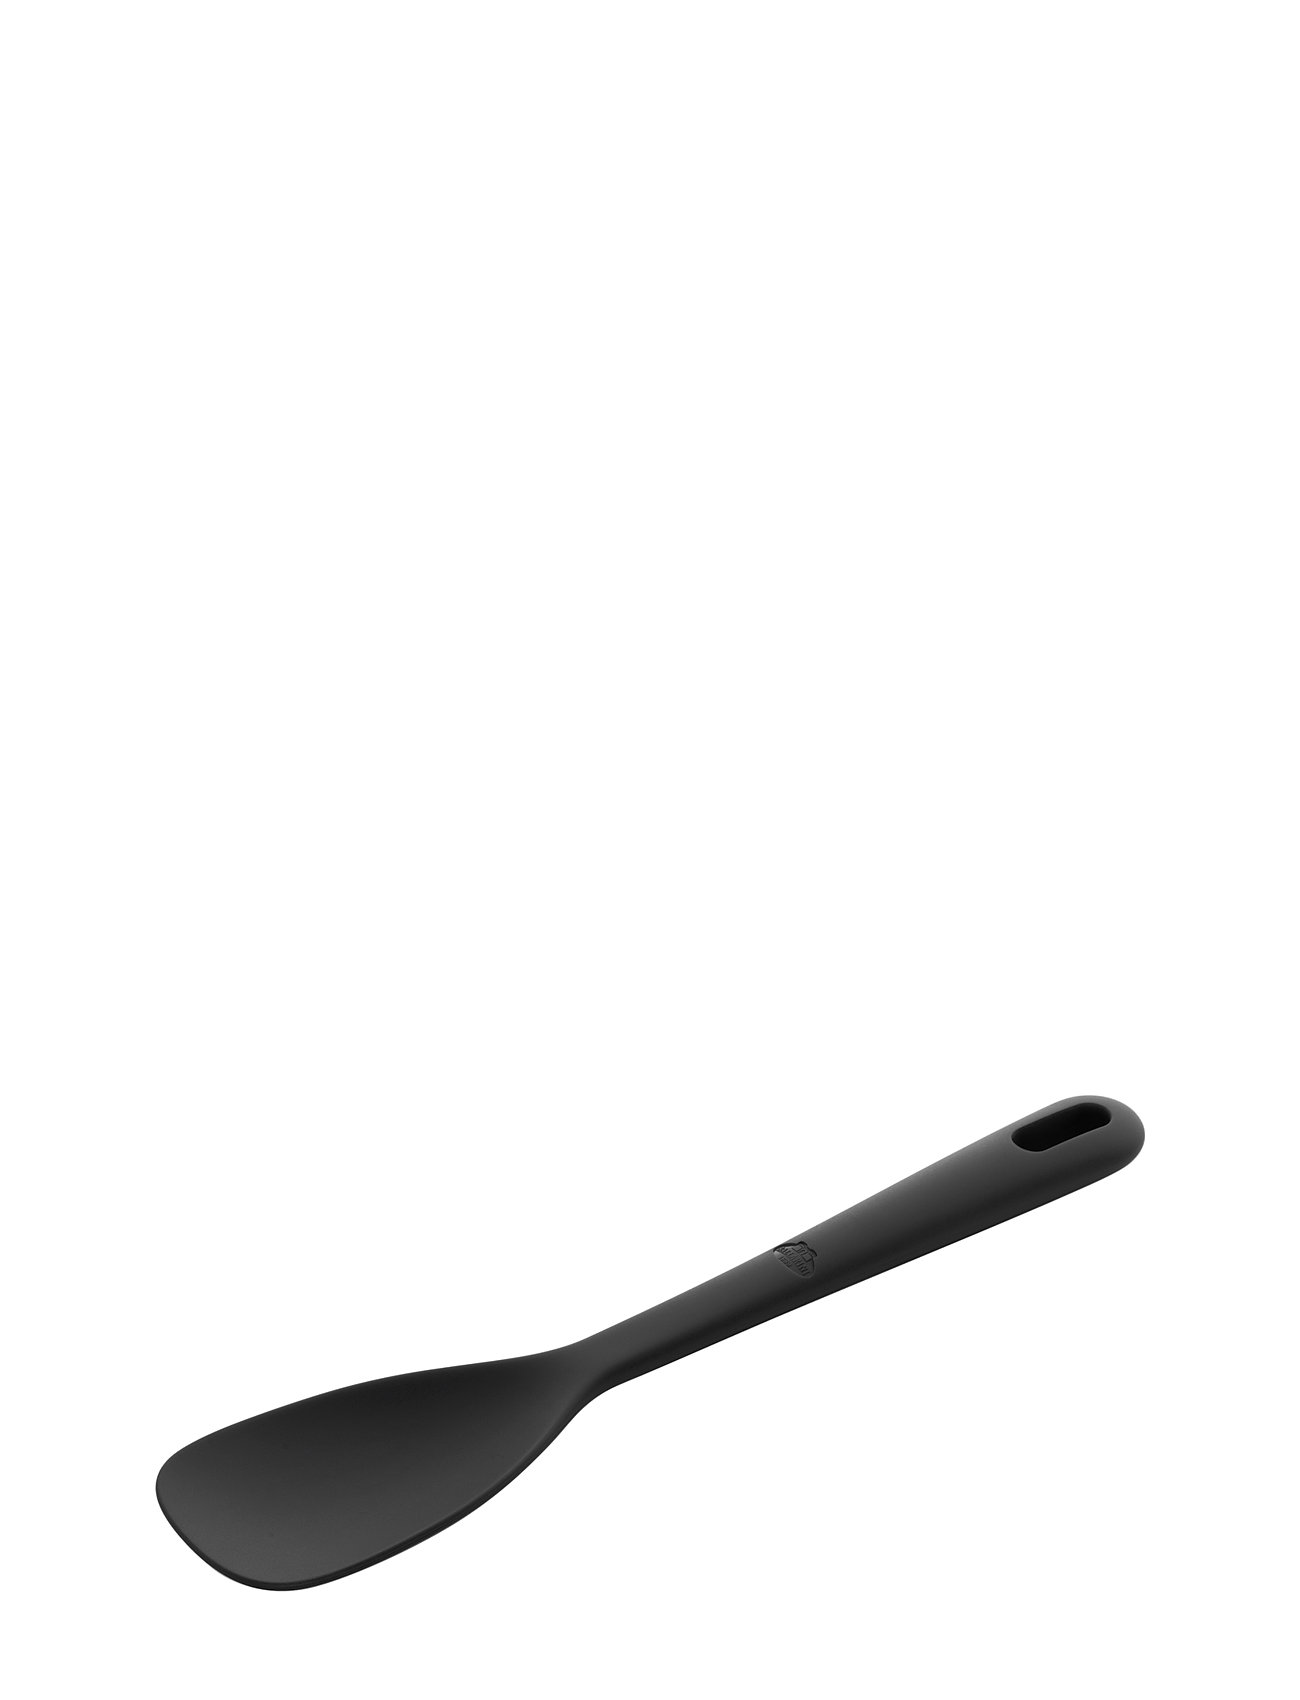 BALLARINI Nero Silicone Serving Spoon, 1 unit - Kroger